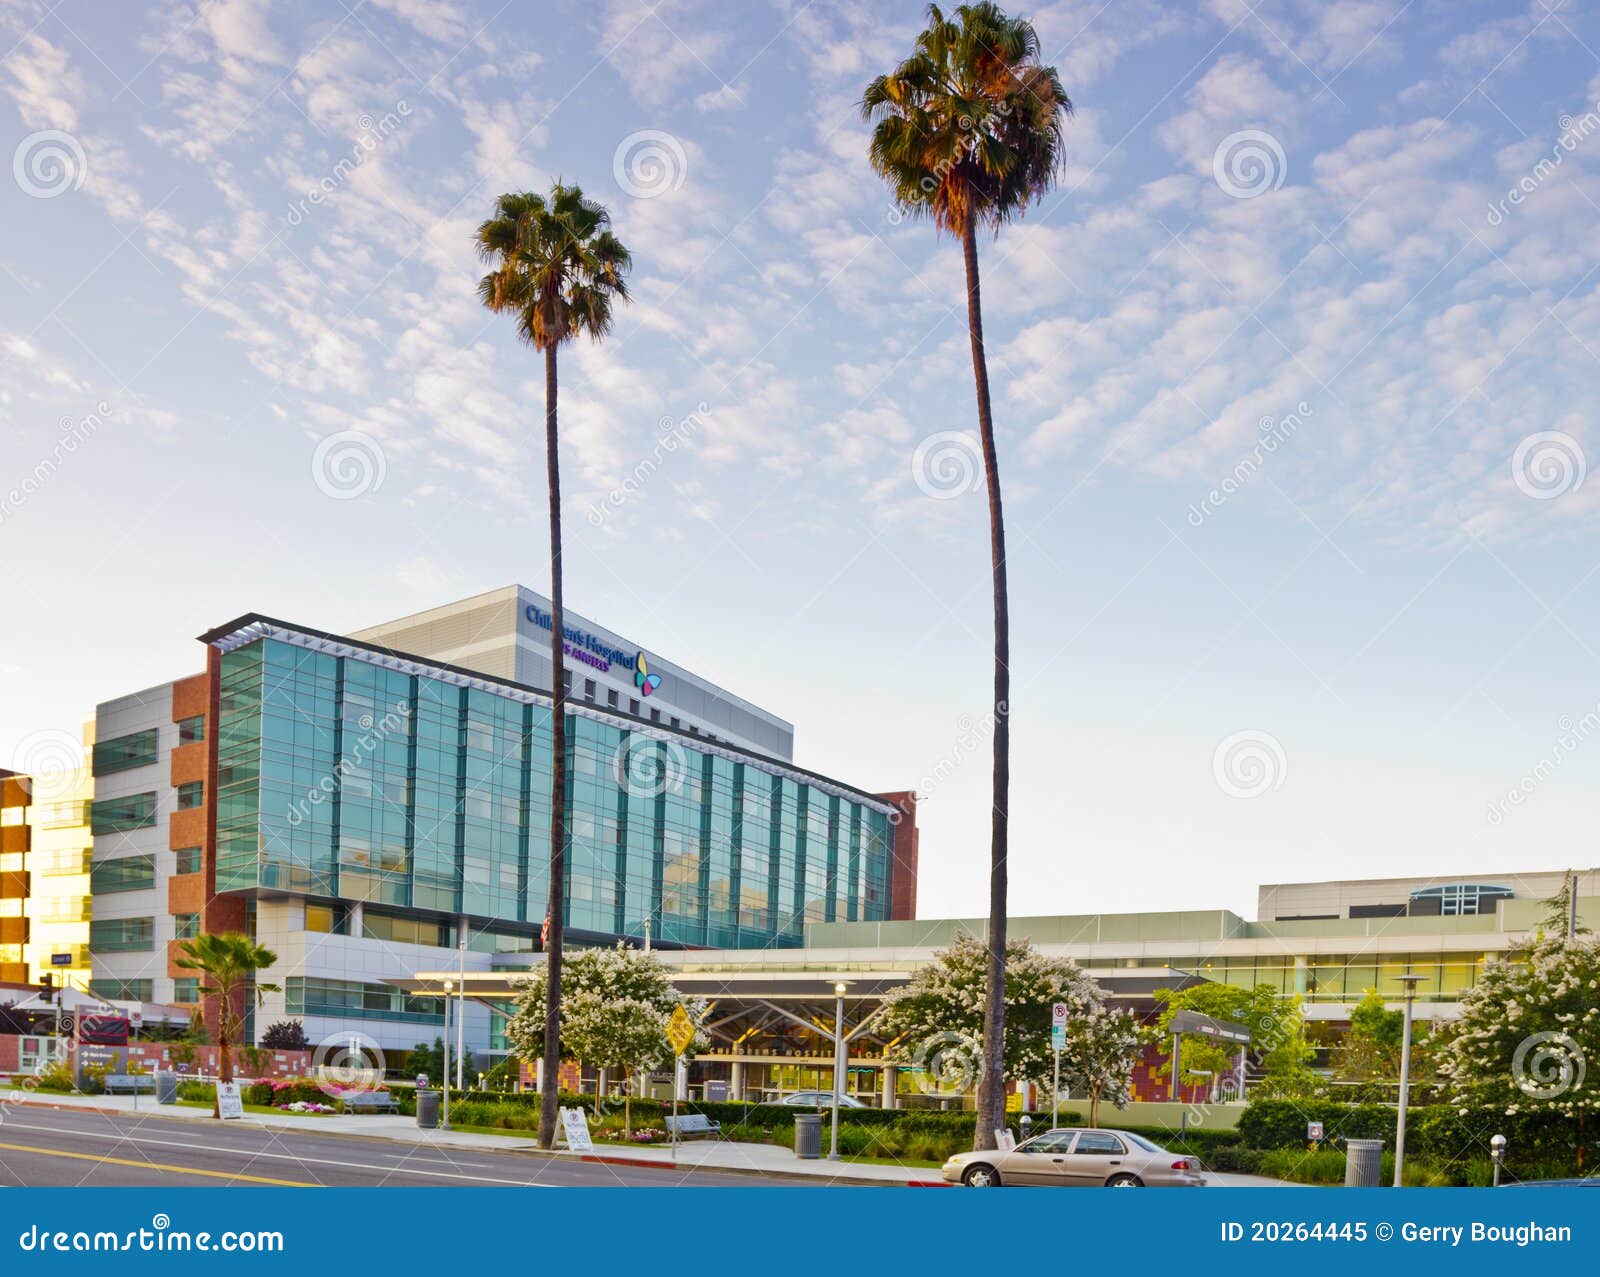 Ospedale dei bambini Los Angeles. Los Angeles, S.U.A. - 8 giugno 2011: L'ospedale dei bambini di Los Angeles è un ospedale d'istruzione senza scopo di lucro situato a Los Angeles sul boulevard di tramonto. L'ospedale fornisce ogni anno la cura pluridisciplinare oltre a 93.000 bambini.